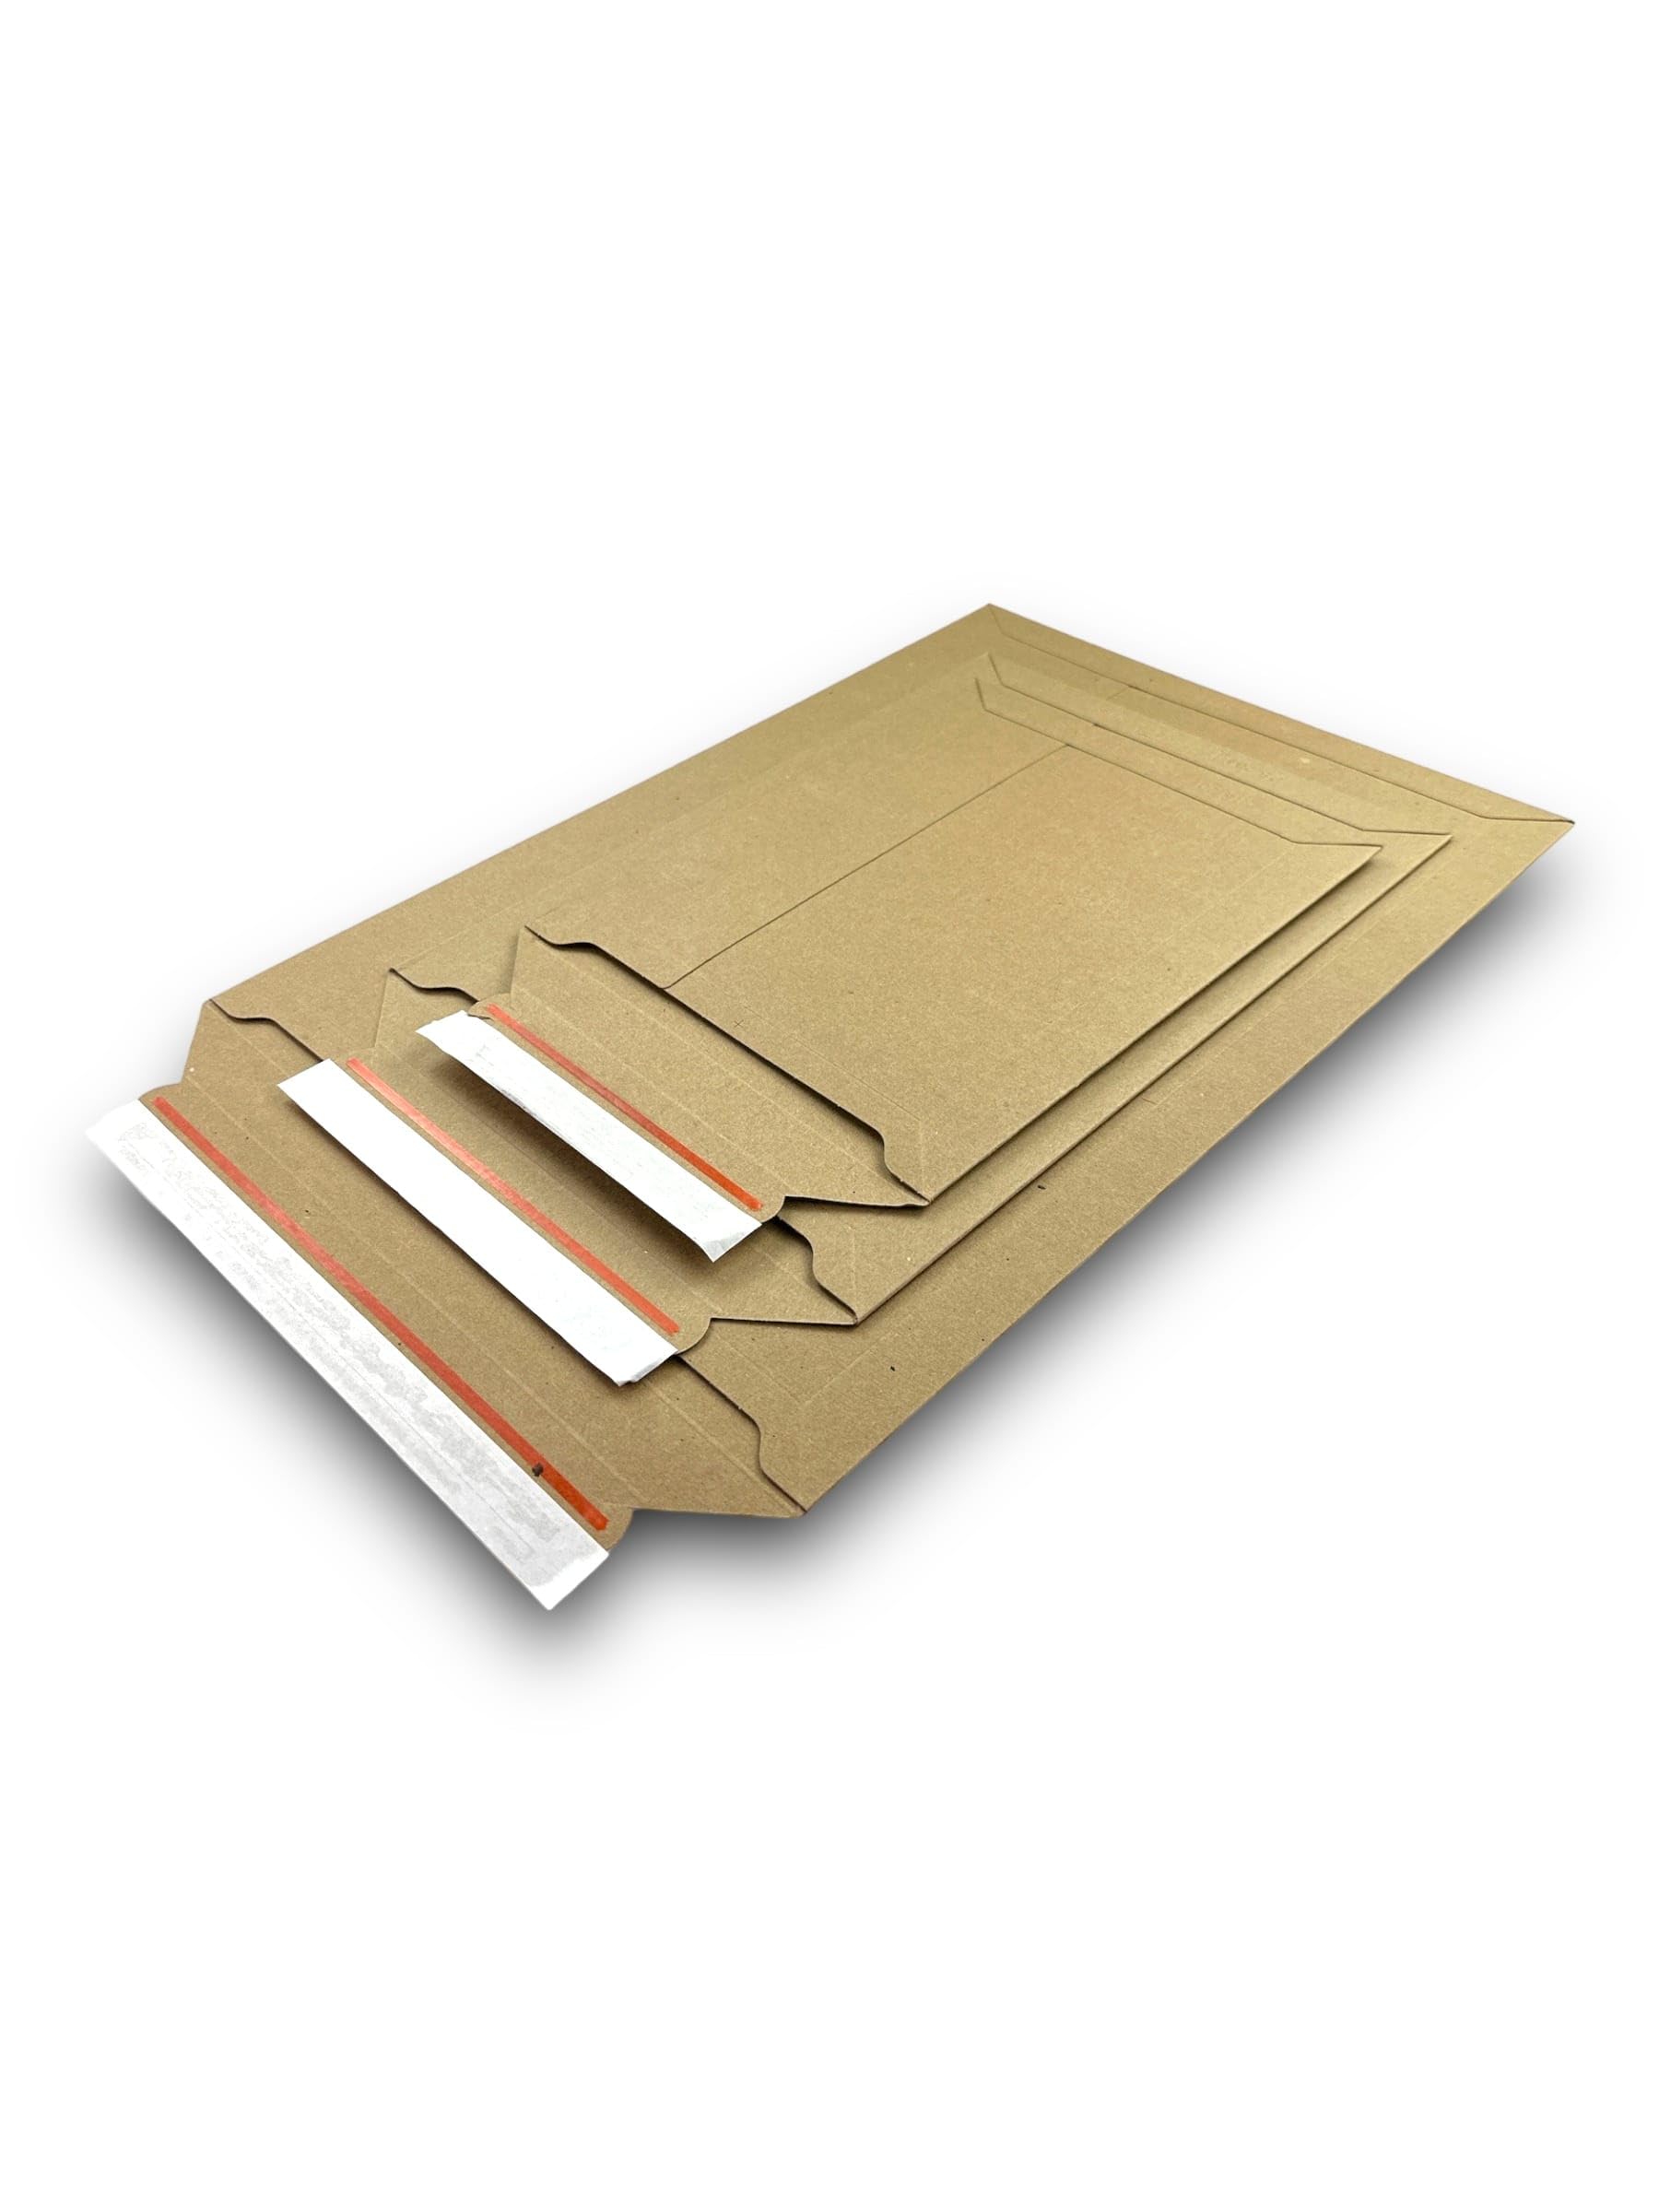 50 Stk. DIN A4 Versandtasche aus Pappe 250 x 353 mm selbstklebend - Papp-Kuverts B4 für Büchersendung, Klamotten, Dokumente, Warensendung, Umschlag Büwa Versandtaschen A4